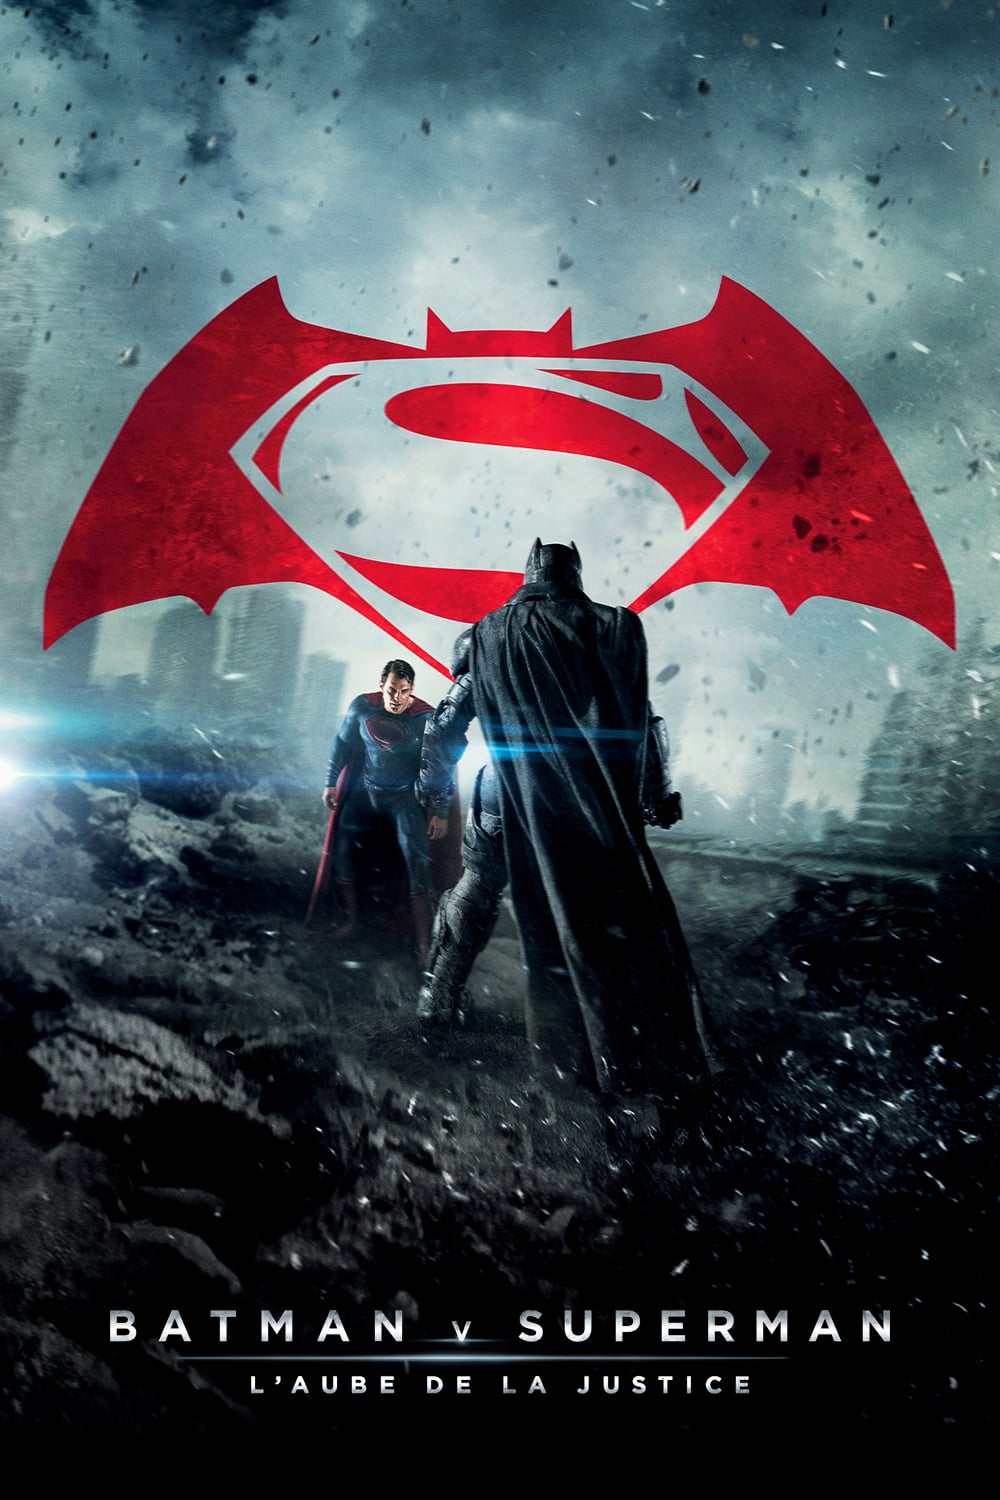 Affiche du film "Batman v Superman : L’Aube de la justice"